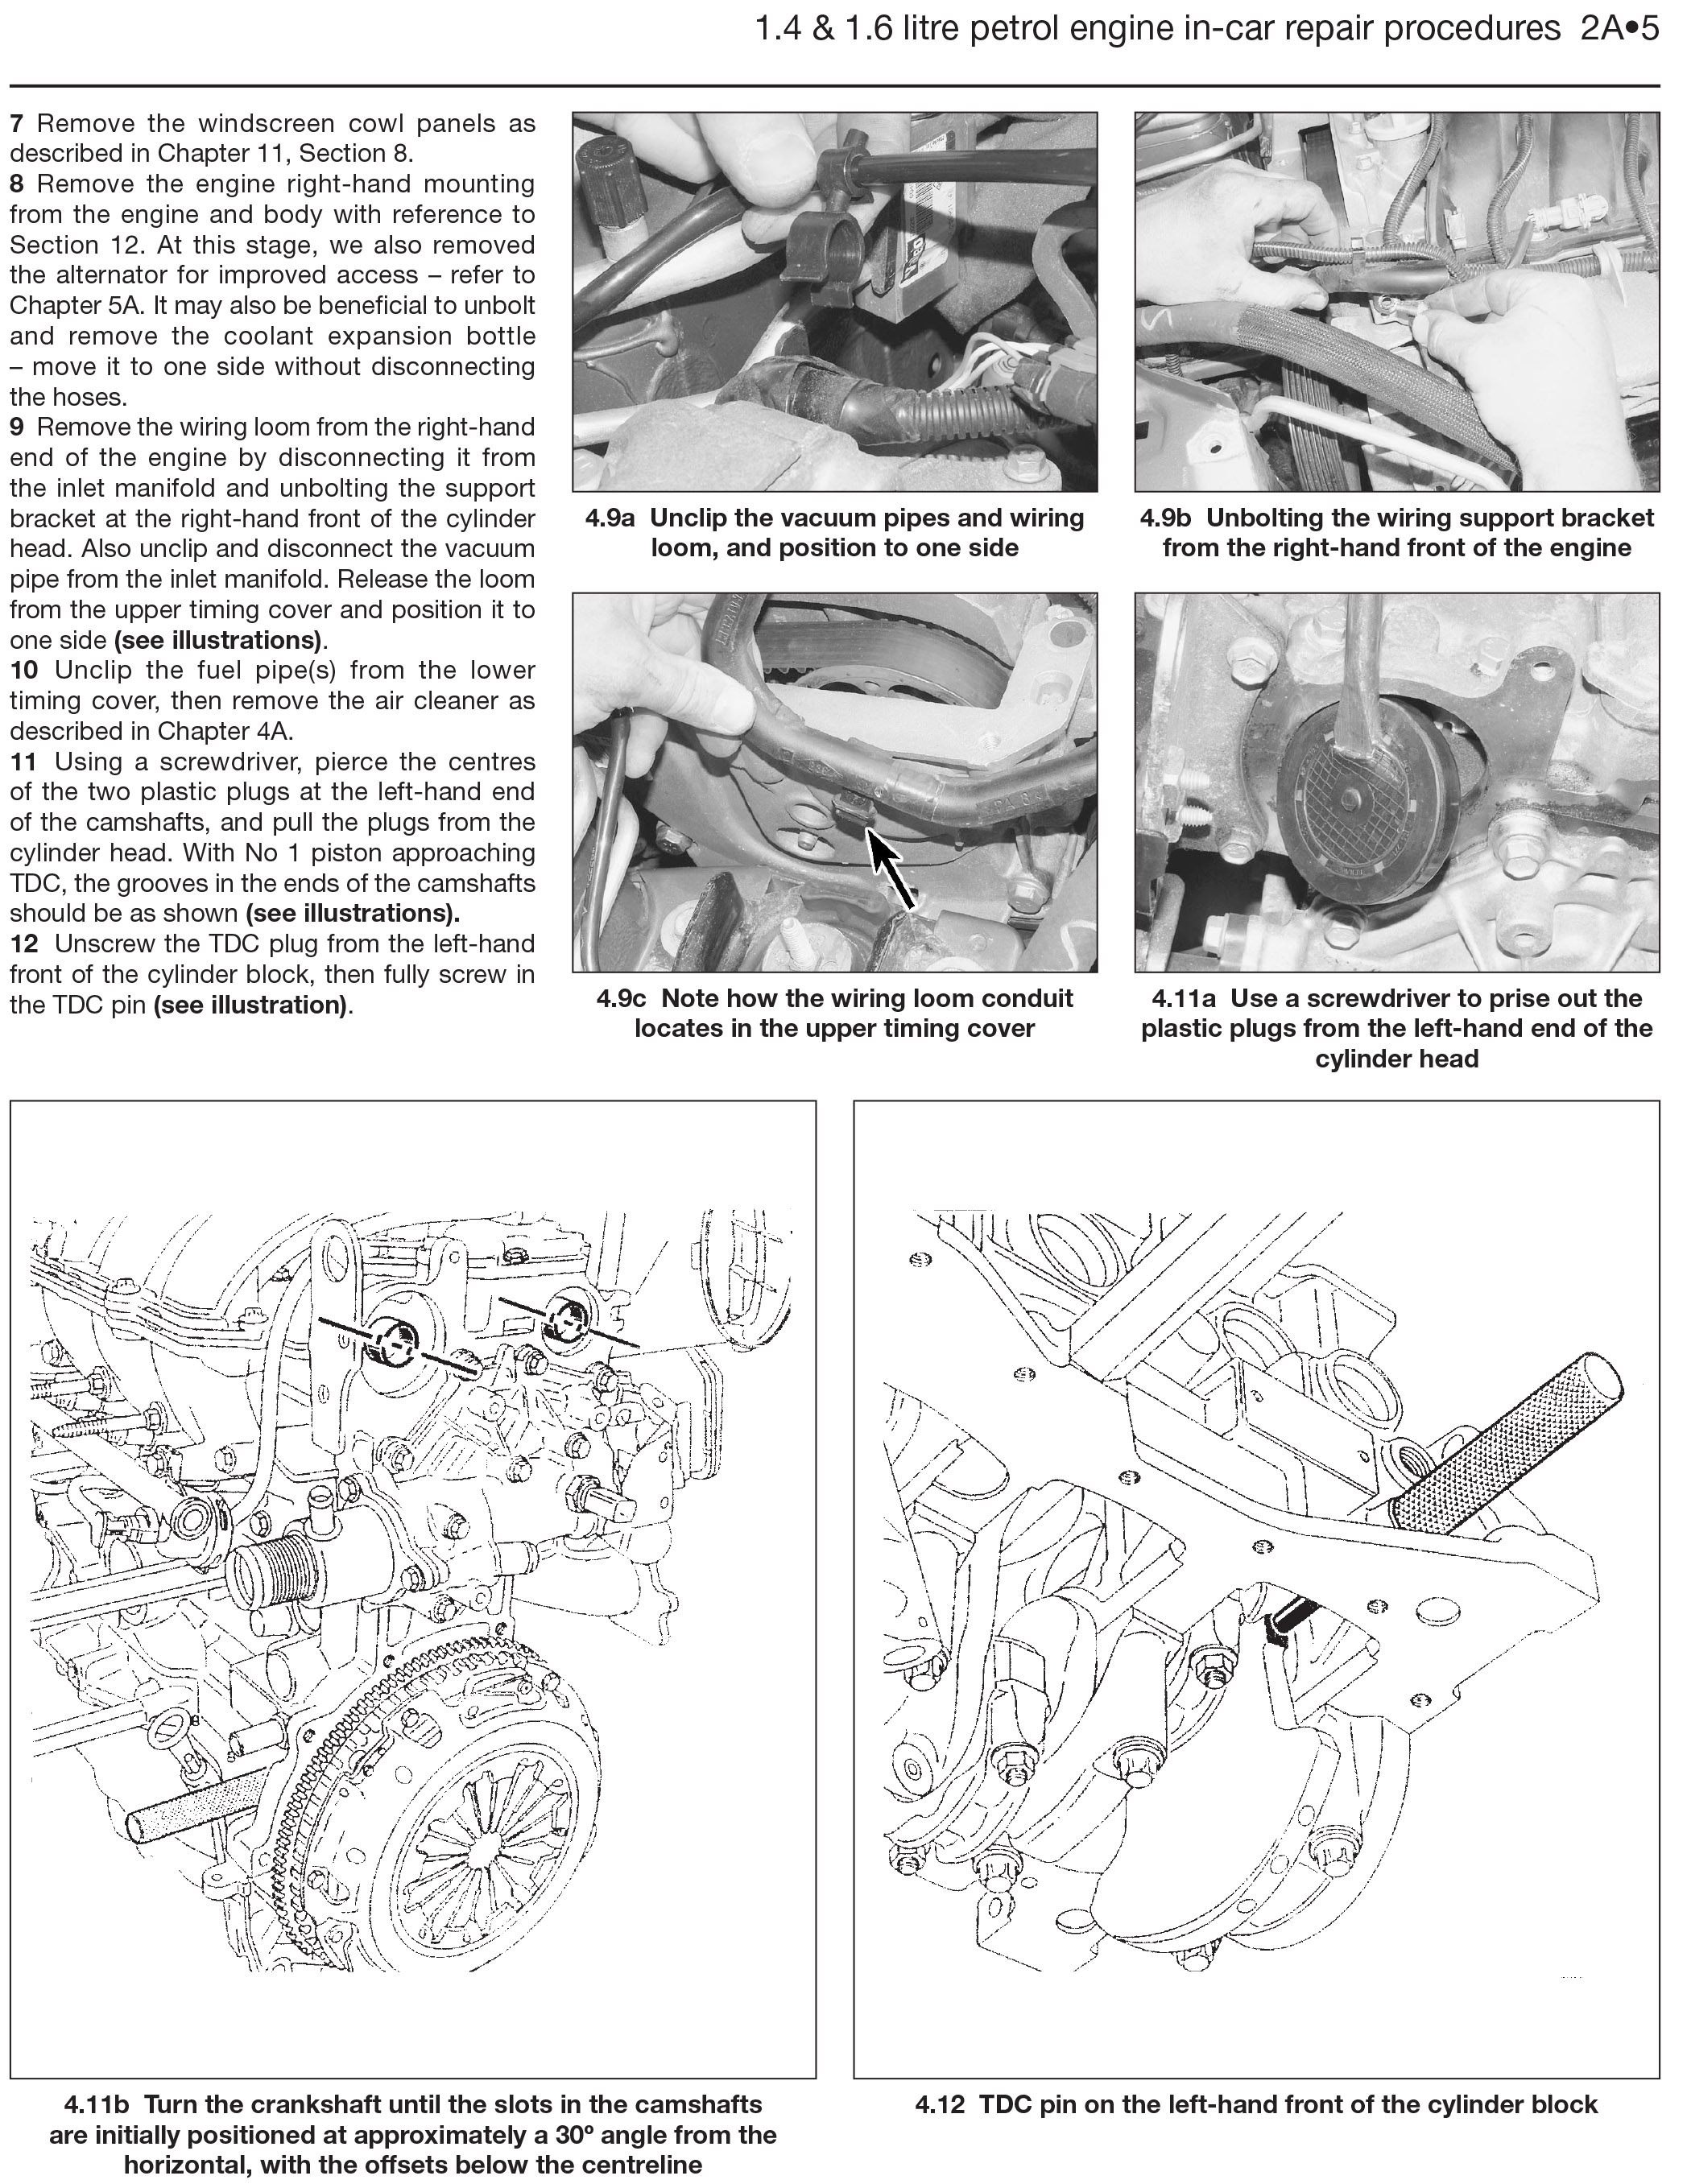 renault gland scenic workshop repair manual